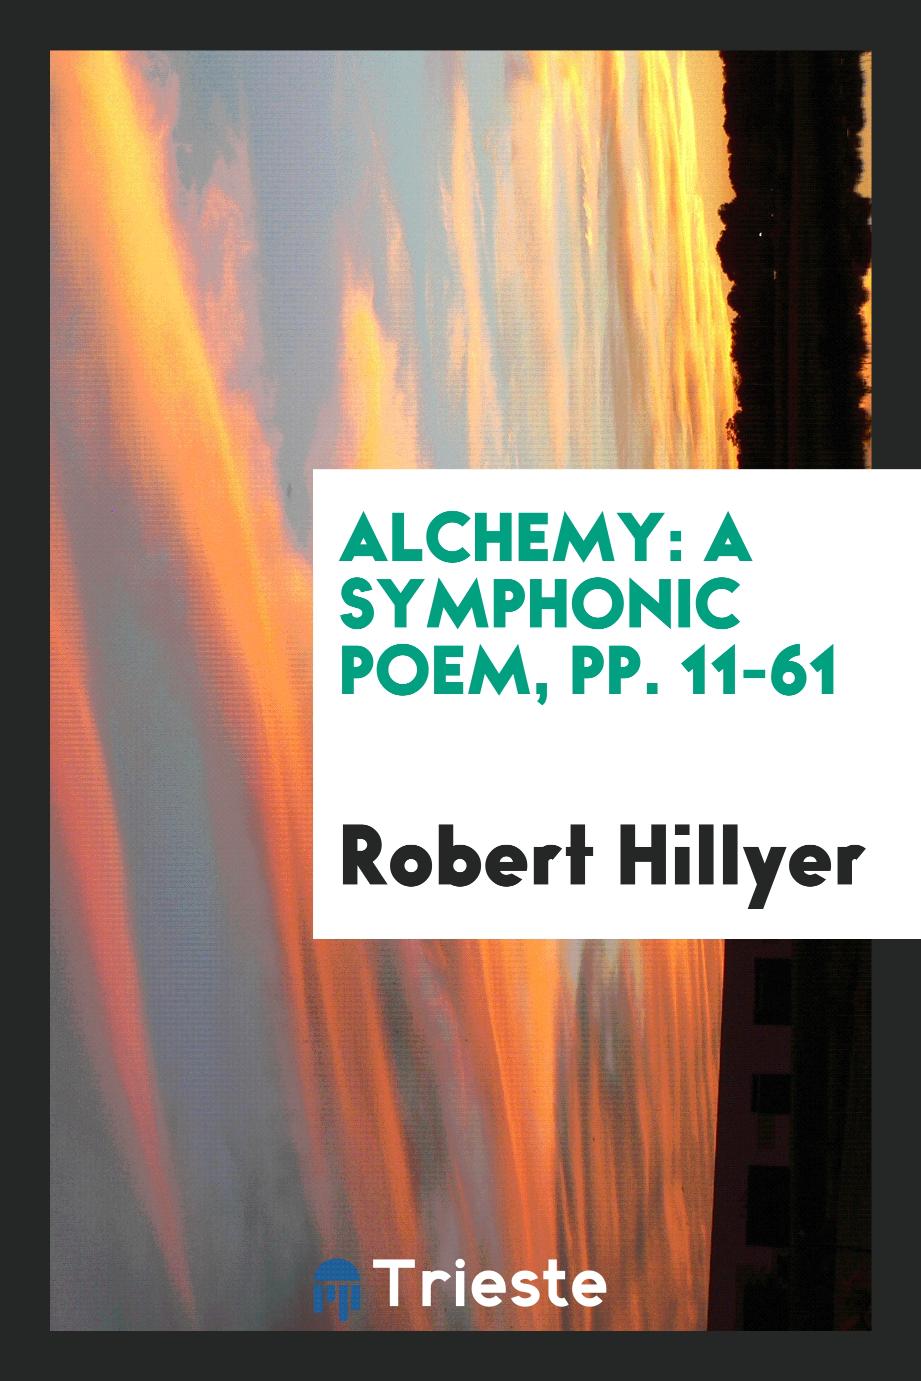 Alchemy: A Symphonic Poem, pp. 11-61